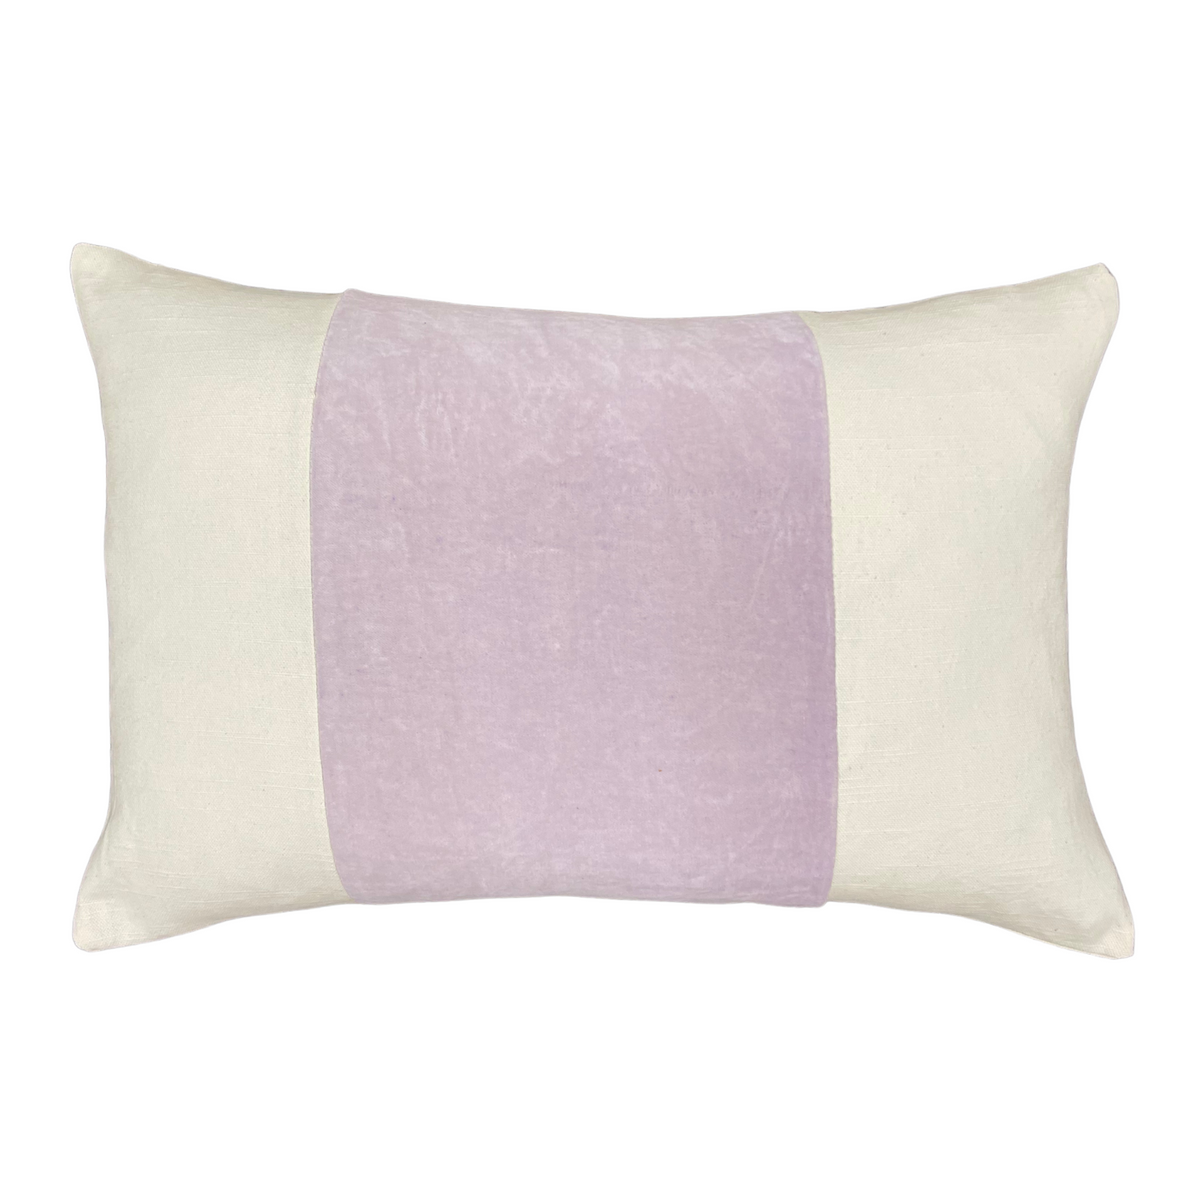 https://www.lauraparkdesigns.shop/wp-content/uploads/1696/19/14x20-velvet-panel-pillow-cover-lavender-laura-park_0.png